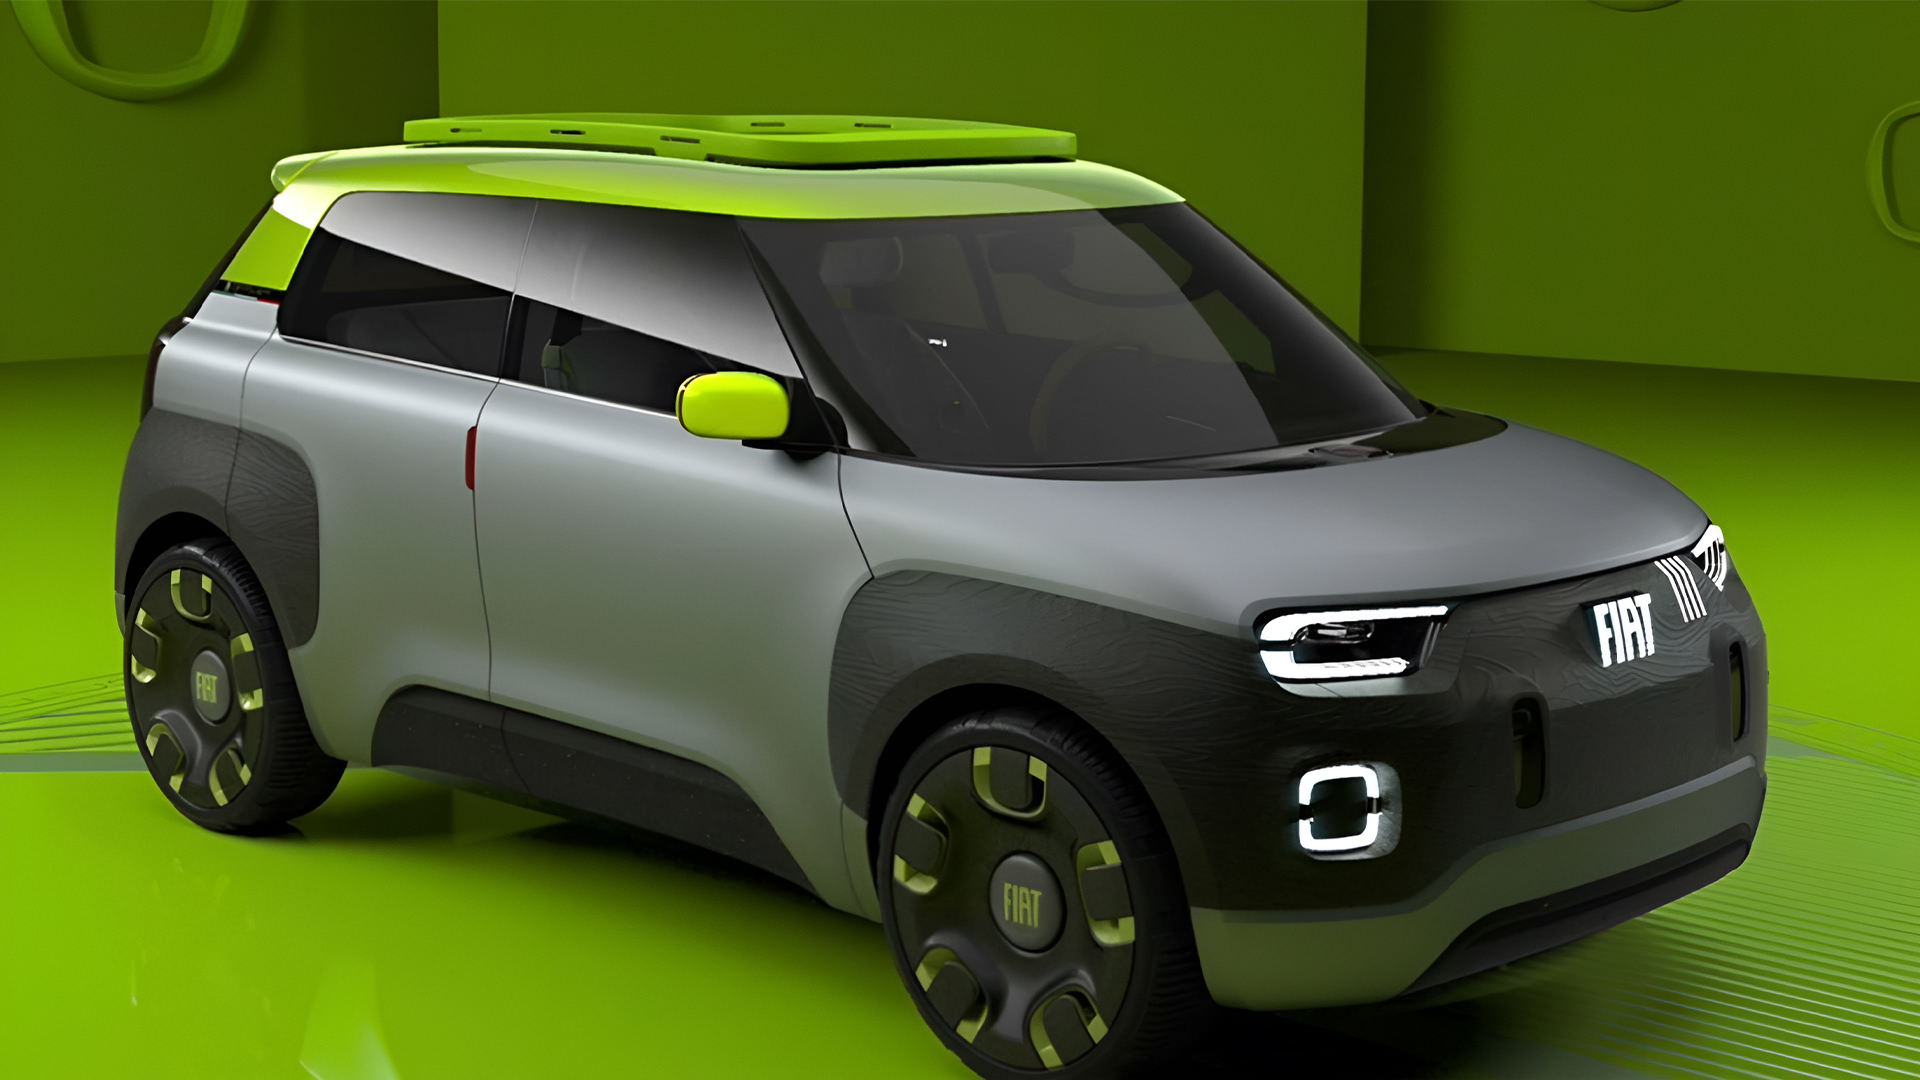 Carro elétrico barato no estilo SUV futurista está sendo produzido e podem vir com baterias mais potentes e muita autonomia